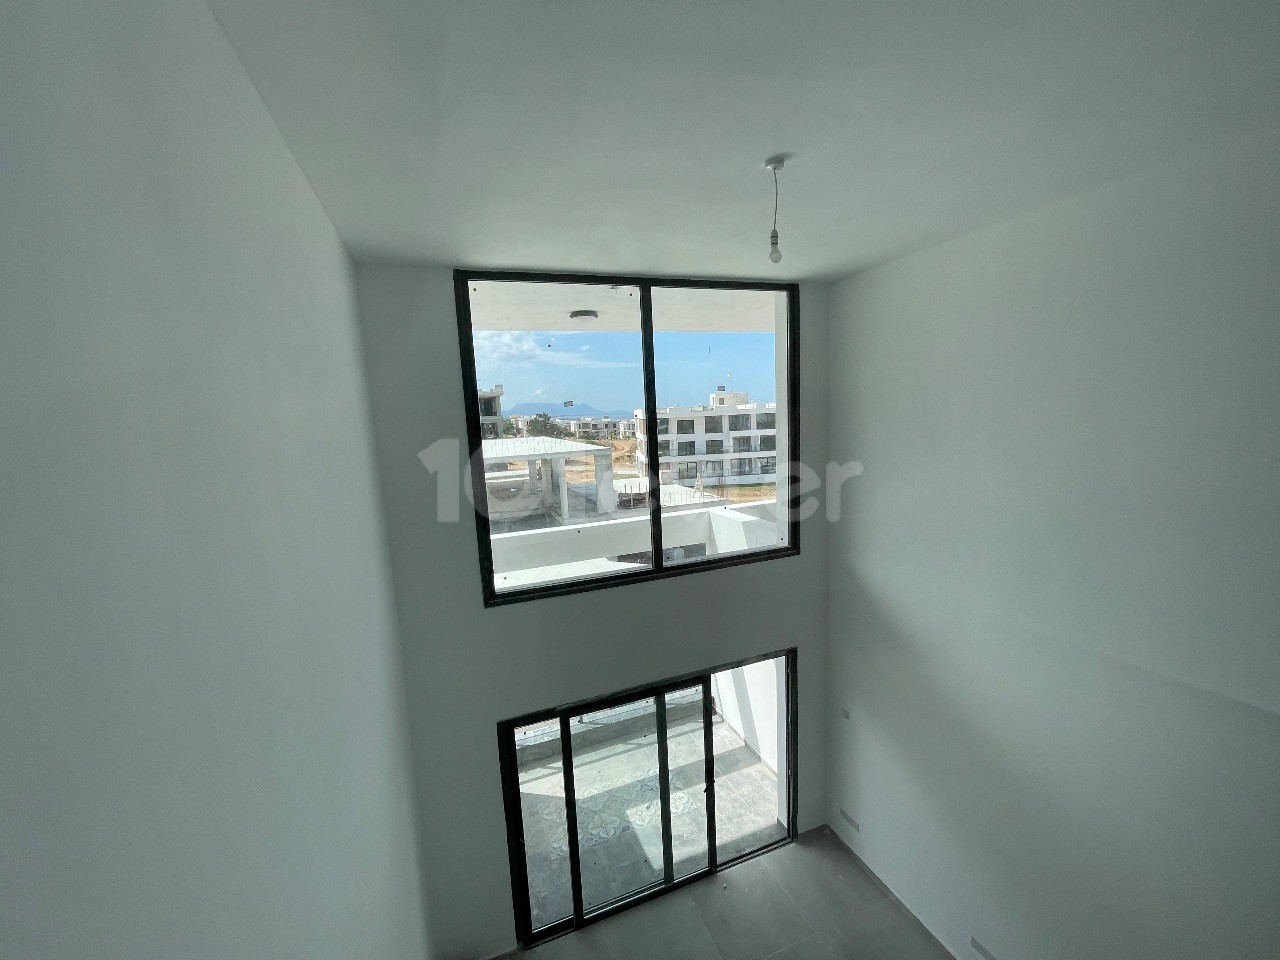 آپارتمان مفهومی هتل برای فروش در منطقه Esentepe با 30 ماه فرصت مدت شرکت بدون بهره